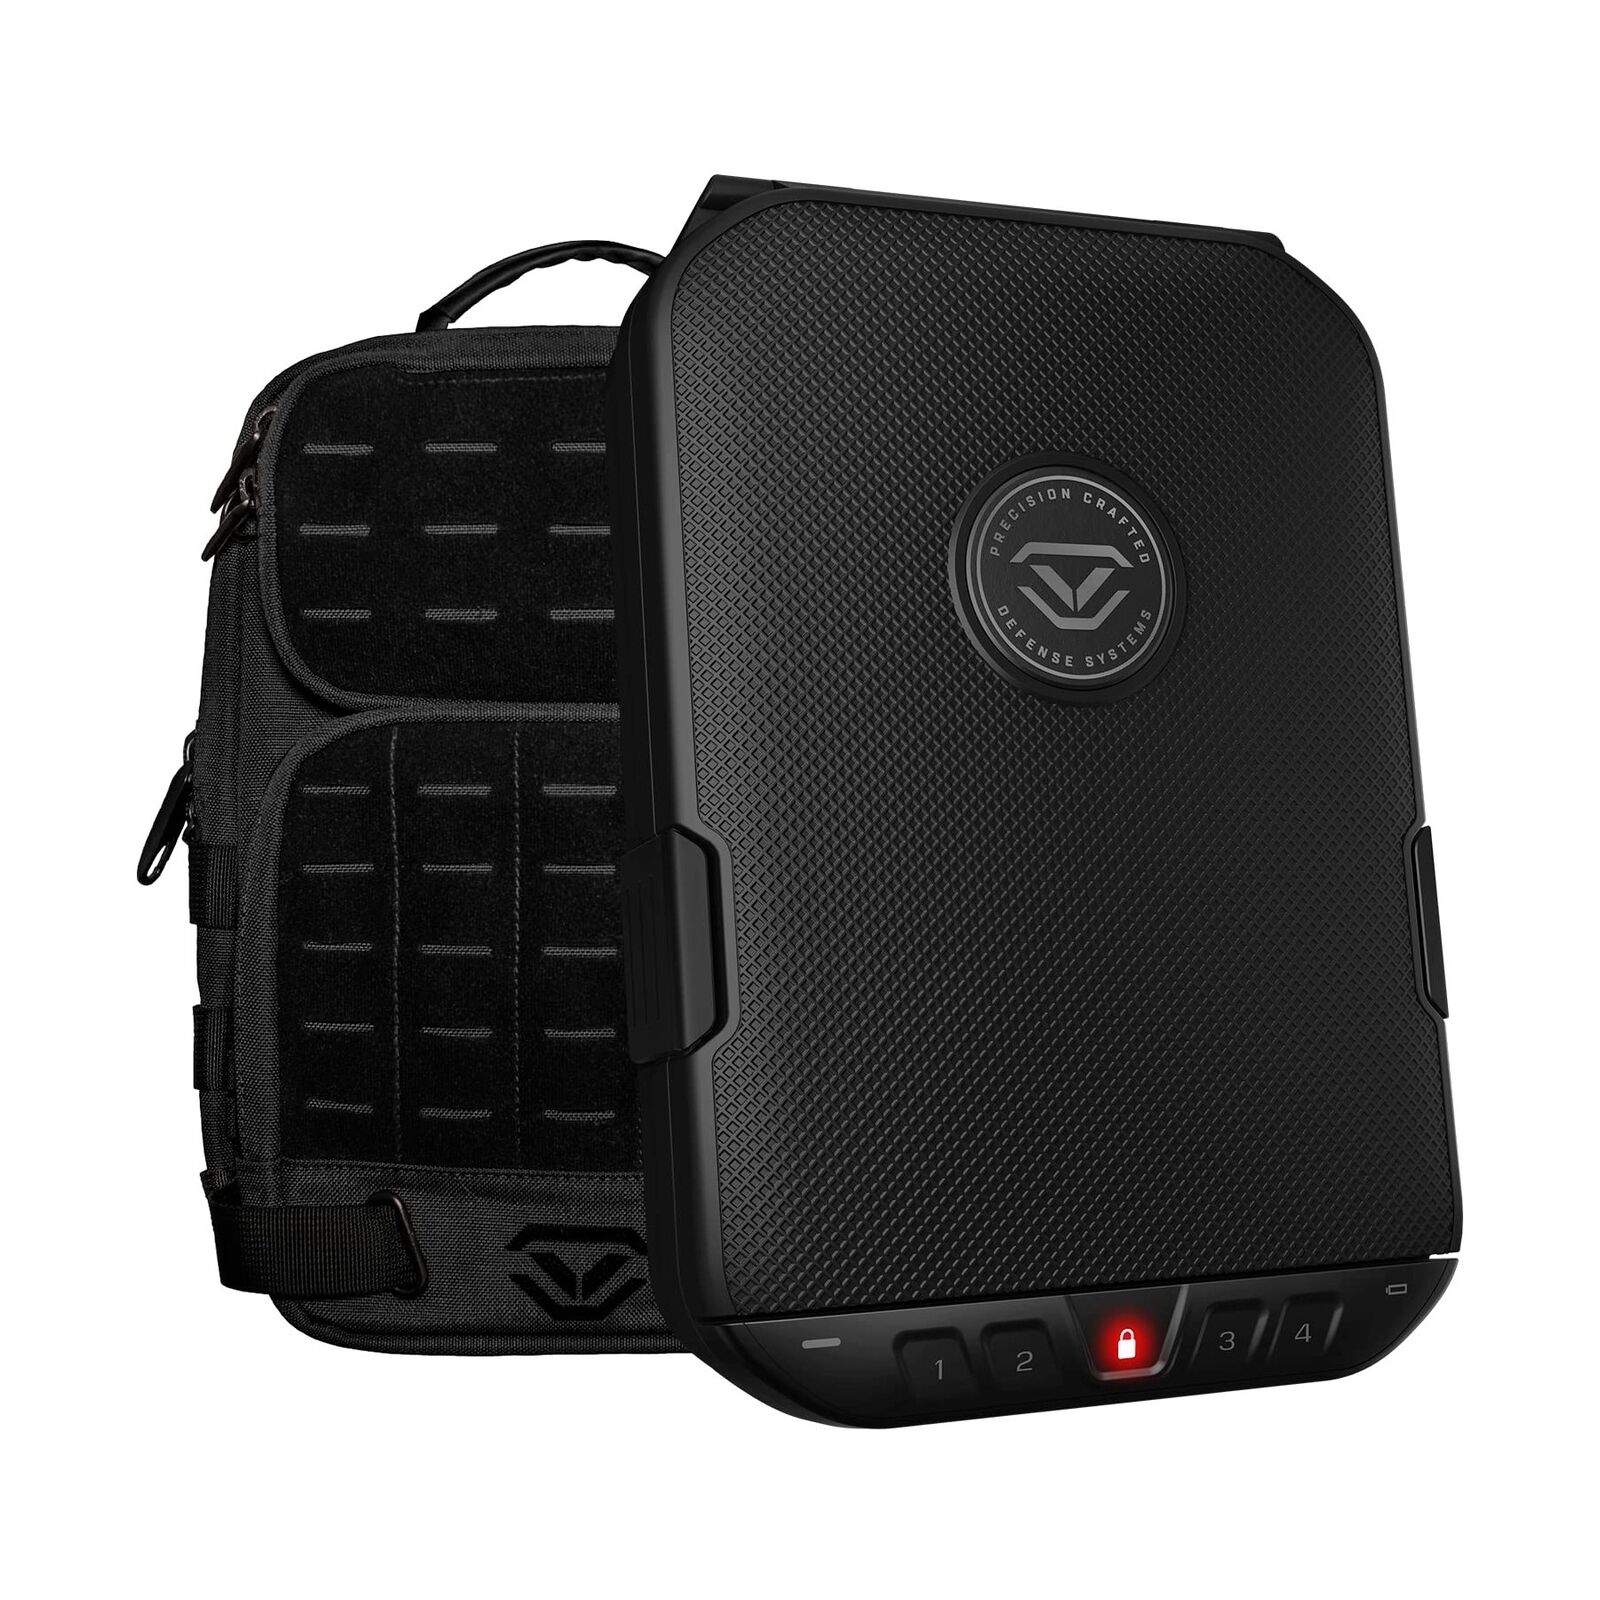 VAULTEK LifePod 2.0 + SlingBag Bundle Secure Waterproof Rugged Lock Box with ...